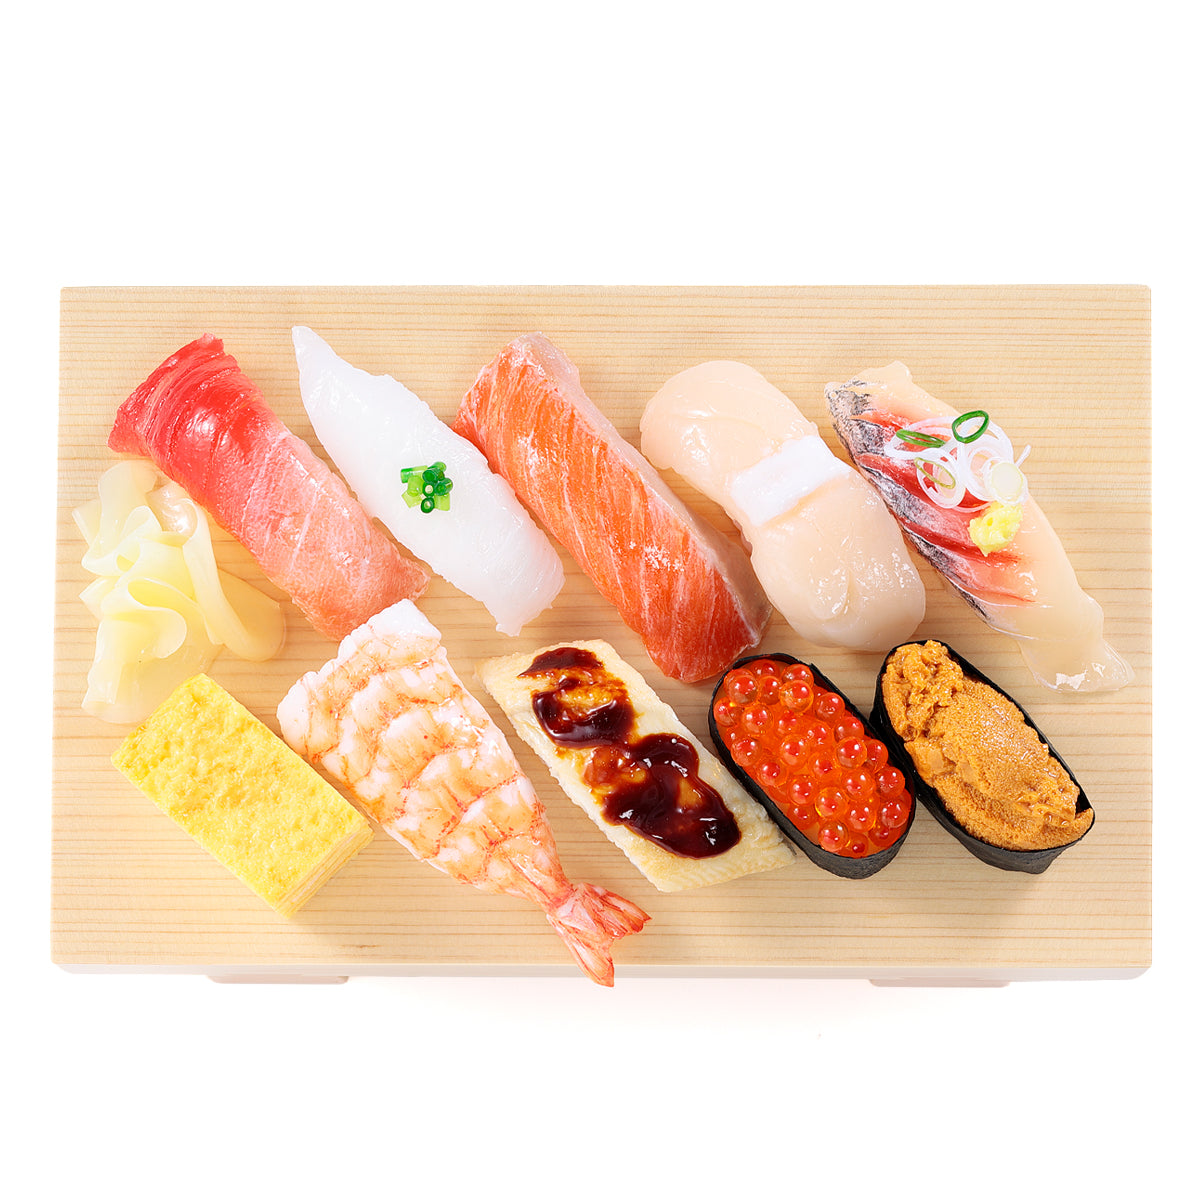 オリジナル食品サンプル「握り寿司」の商品画像です。